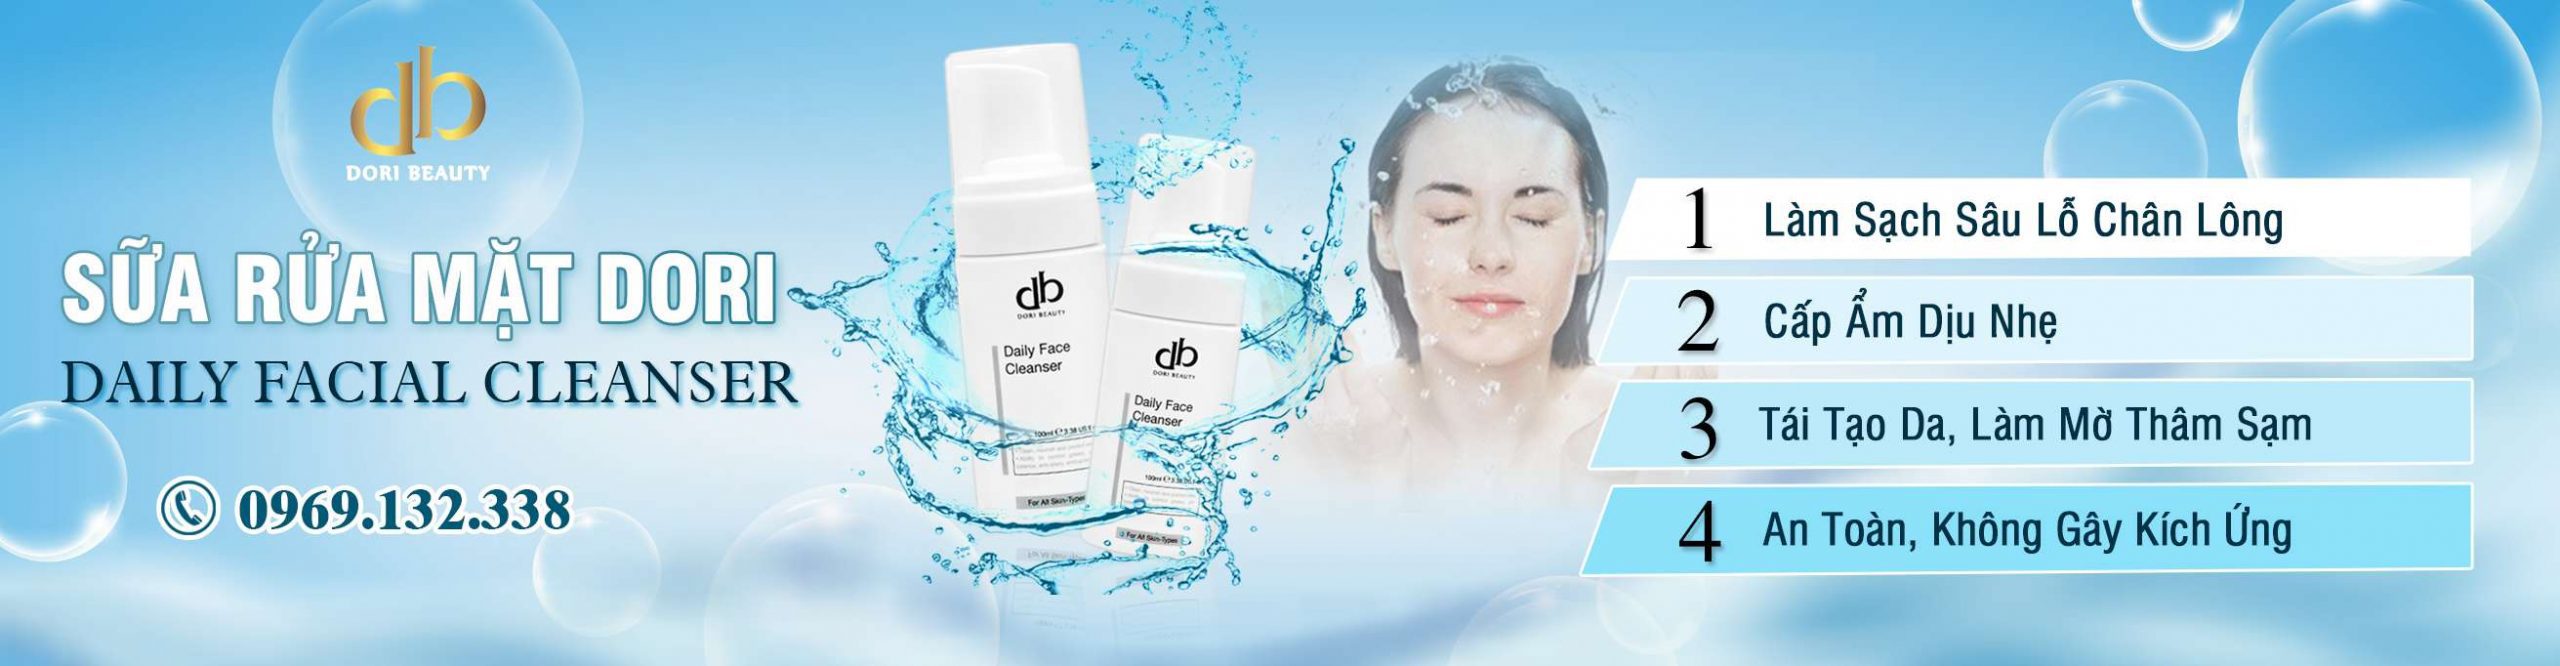 Review đánh giá Công dụng sữa rửa mặt DORI (Daily Facial Cleanser)